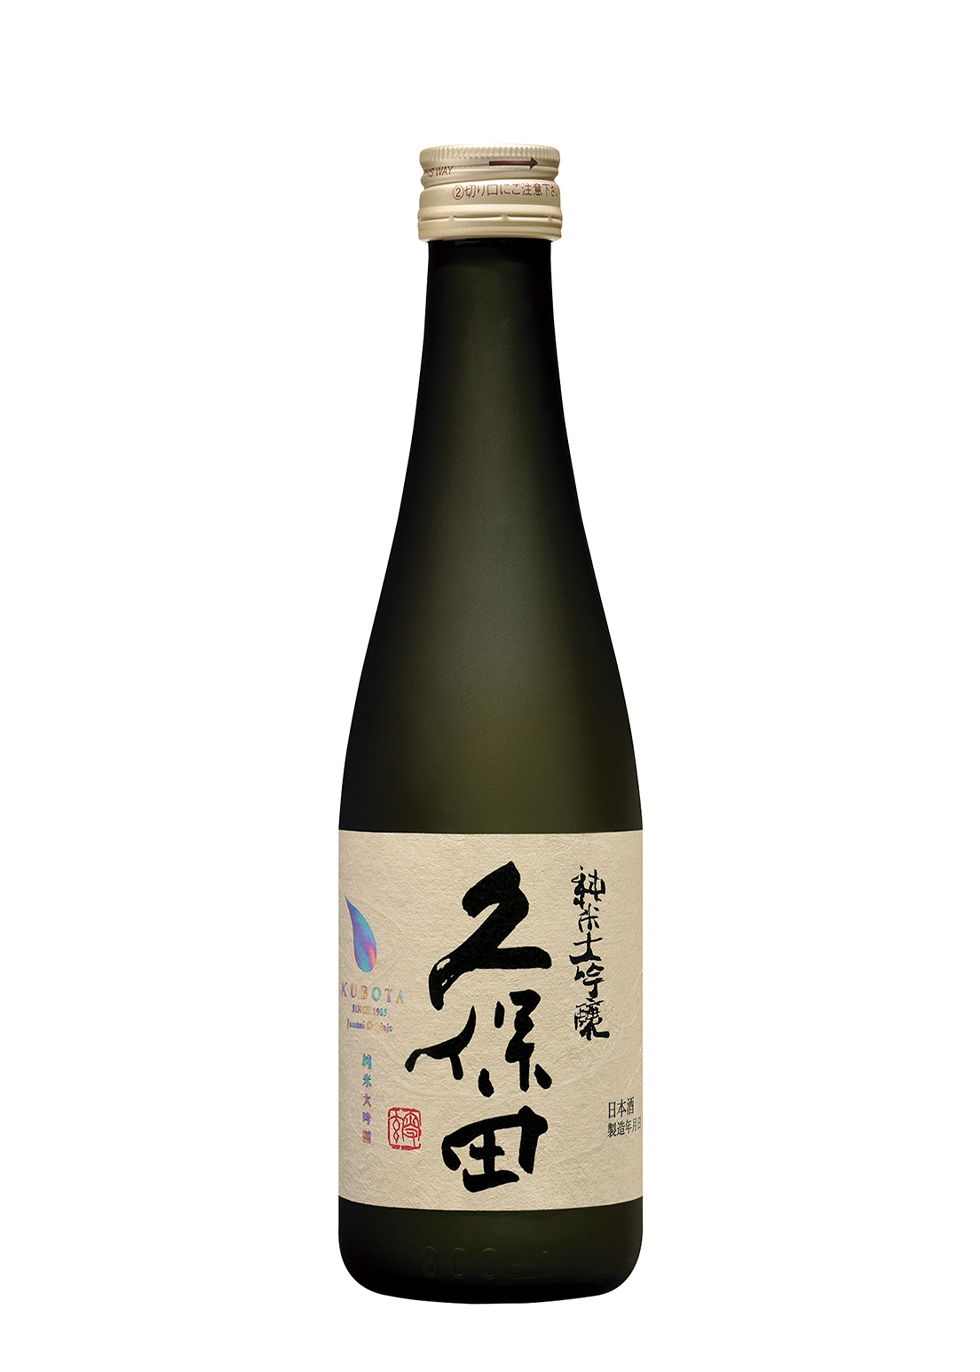 Kubota Sake Junmai Daiginjo Sake 300ml - Harvey Nichols